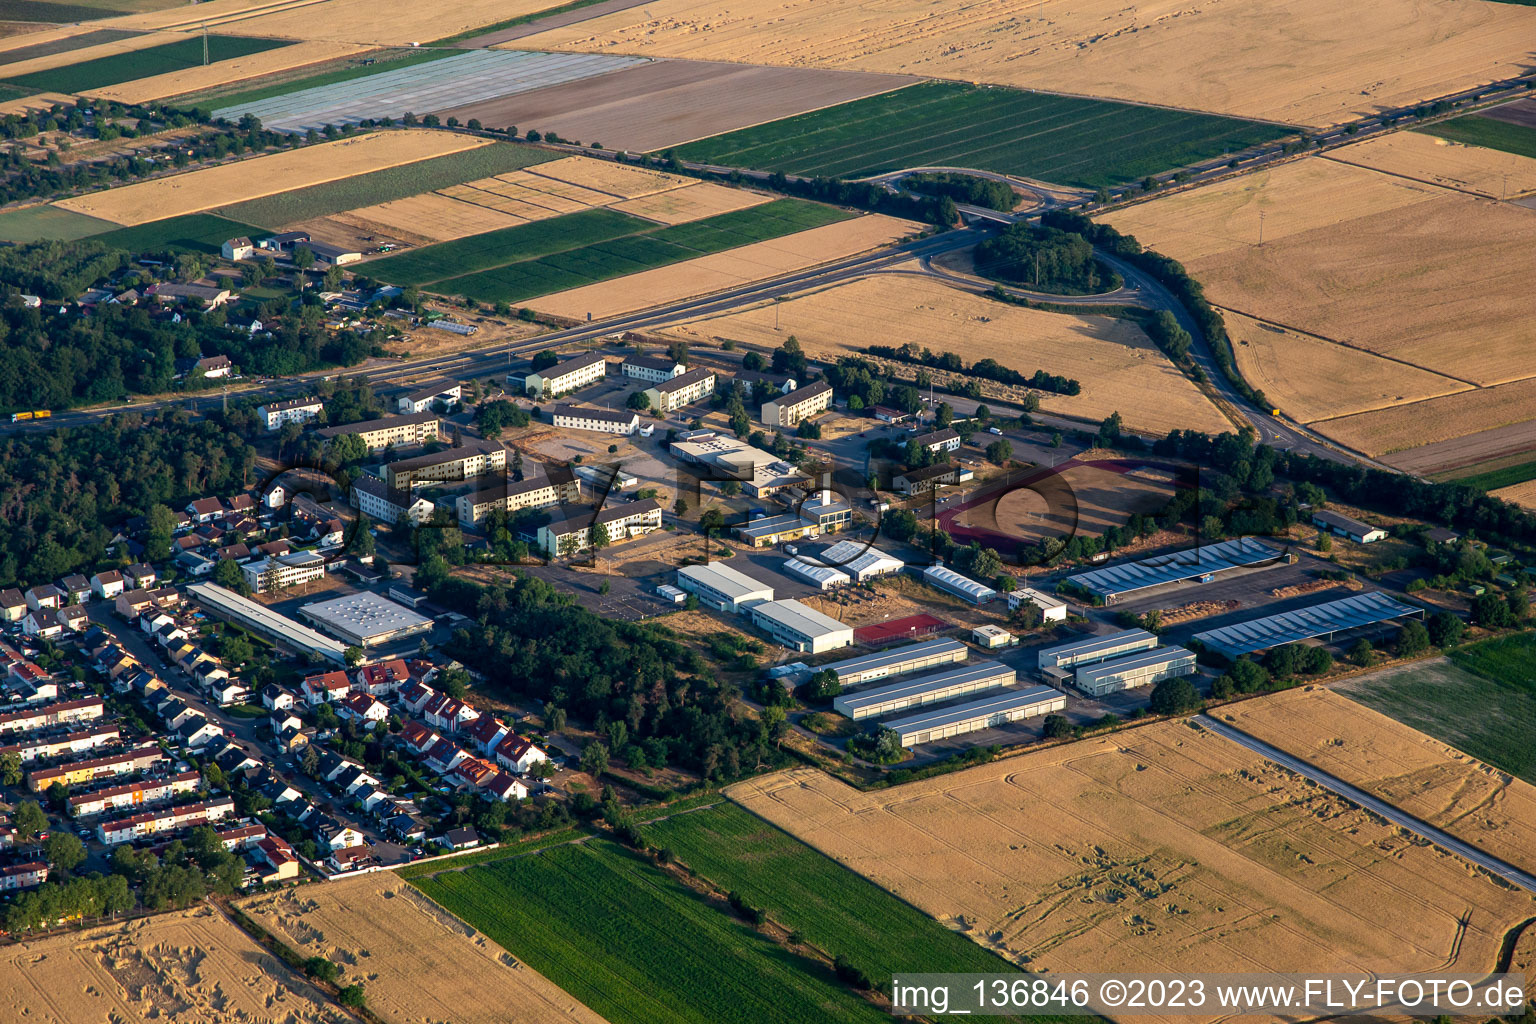 Vue aérienne de Centre d'accueil pour demandeurs d'asile Speyer (AfA) à Speyer dans le département Rhénanie-Palatinat, Allemagne